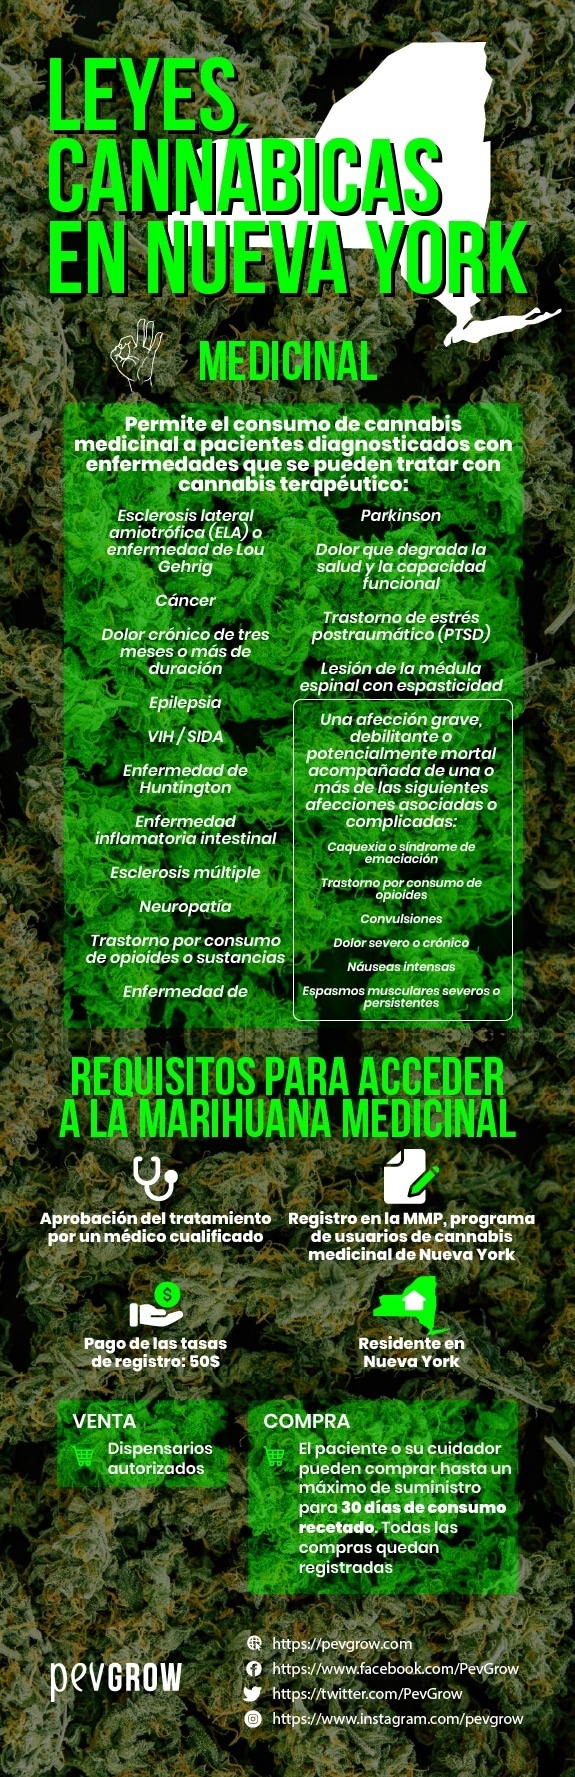 Requisitos para acceder a la marihuana medicinal y casos en que se permite su uso.